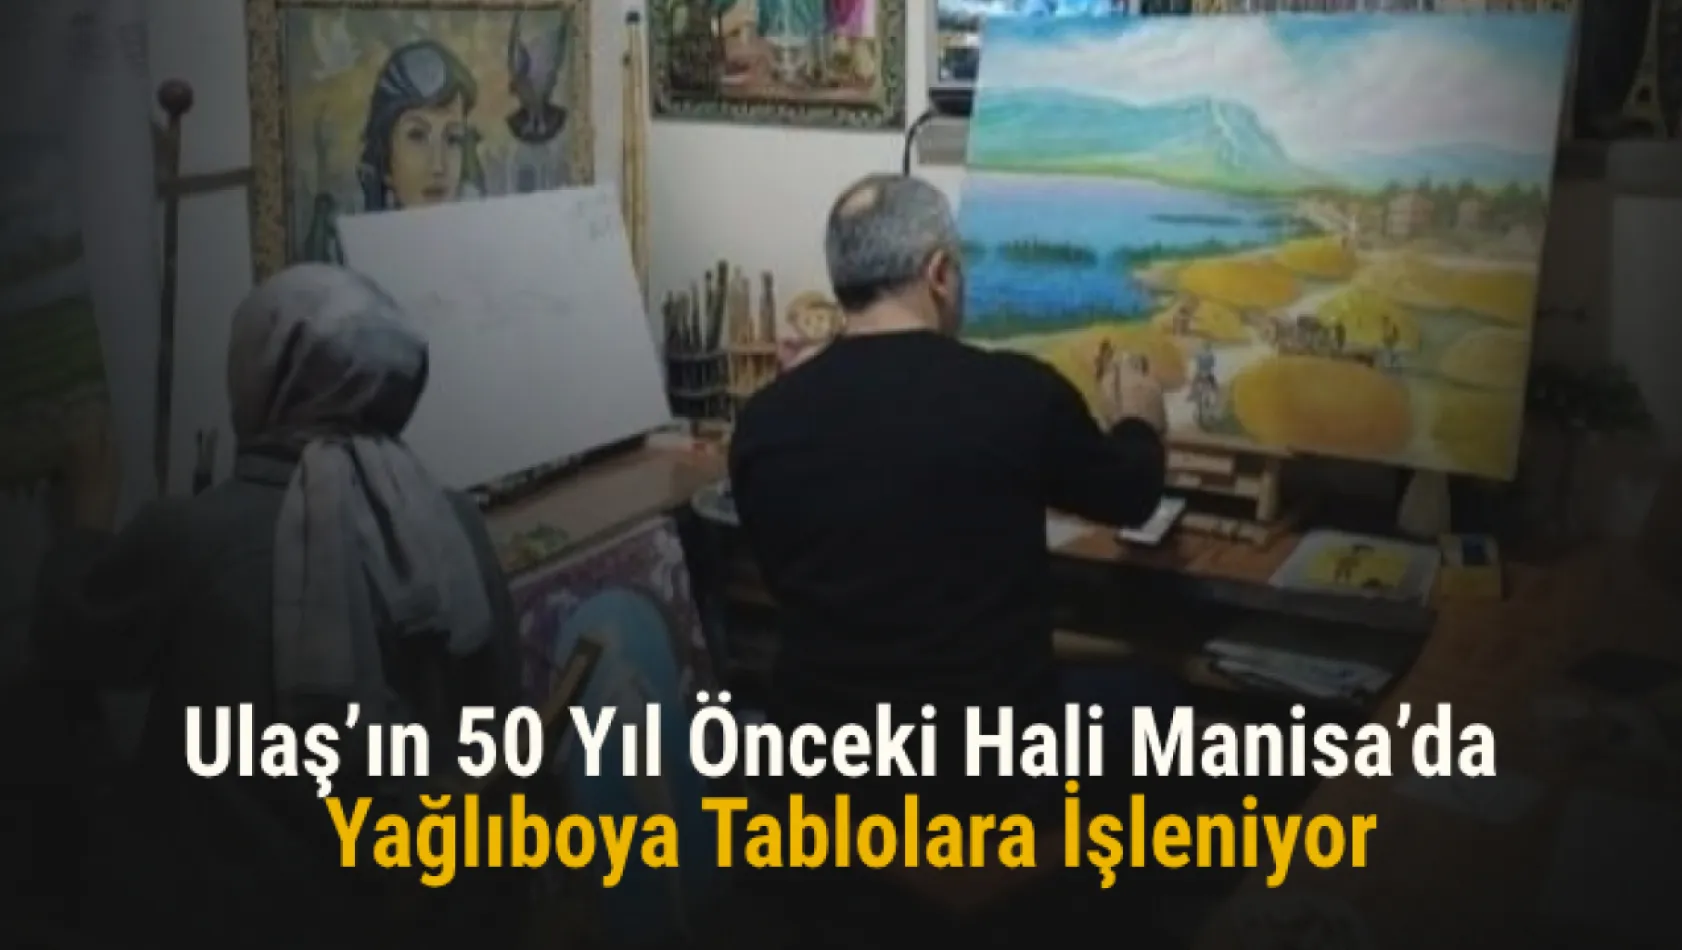 Ulaş'ın 50 yıl önceki hali Manisa'da yağlıboya tablolara işleniyor